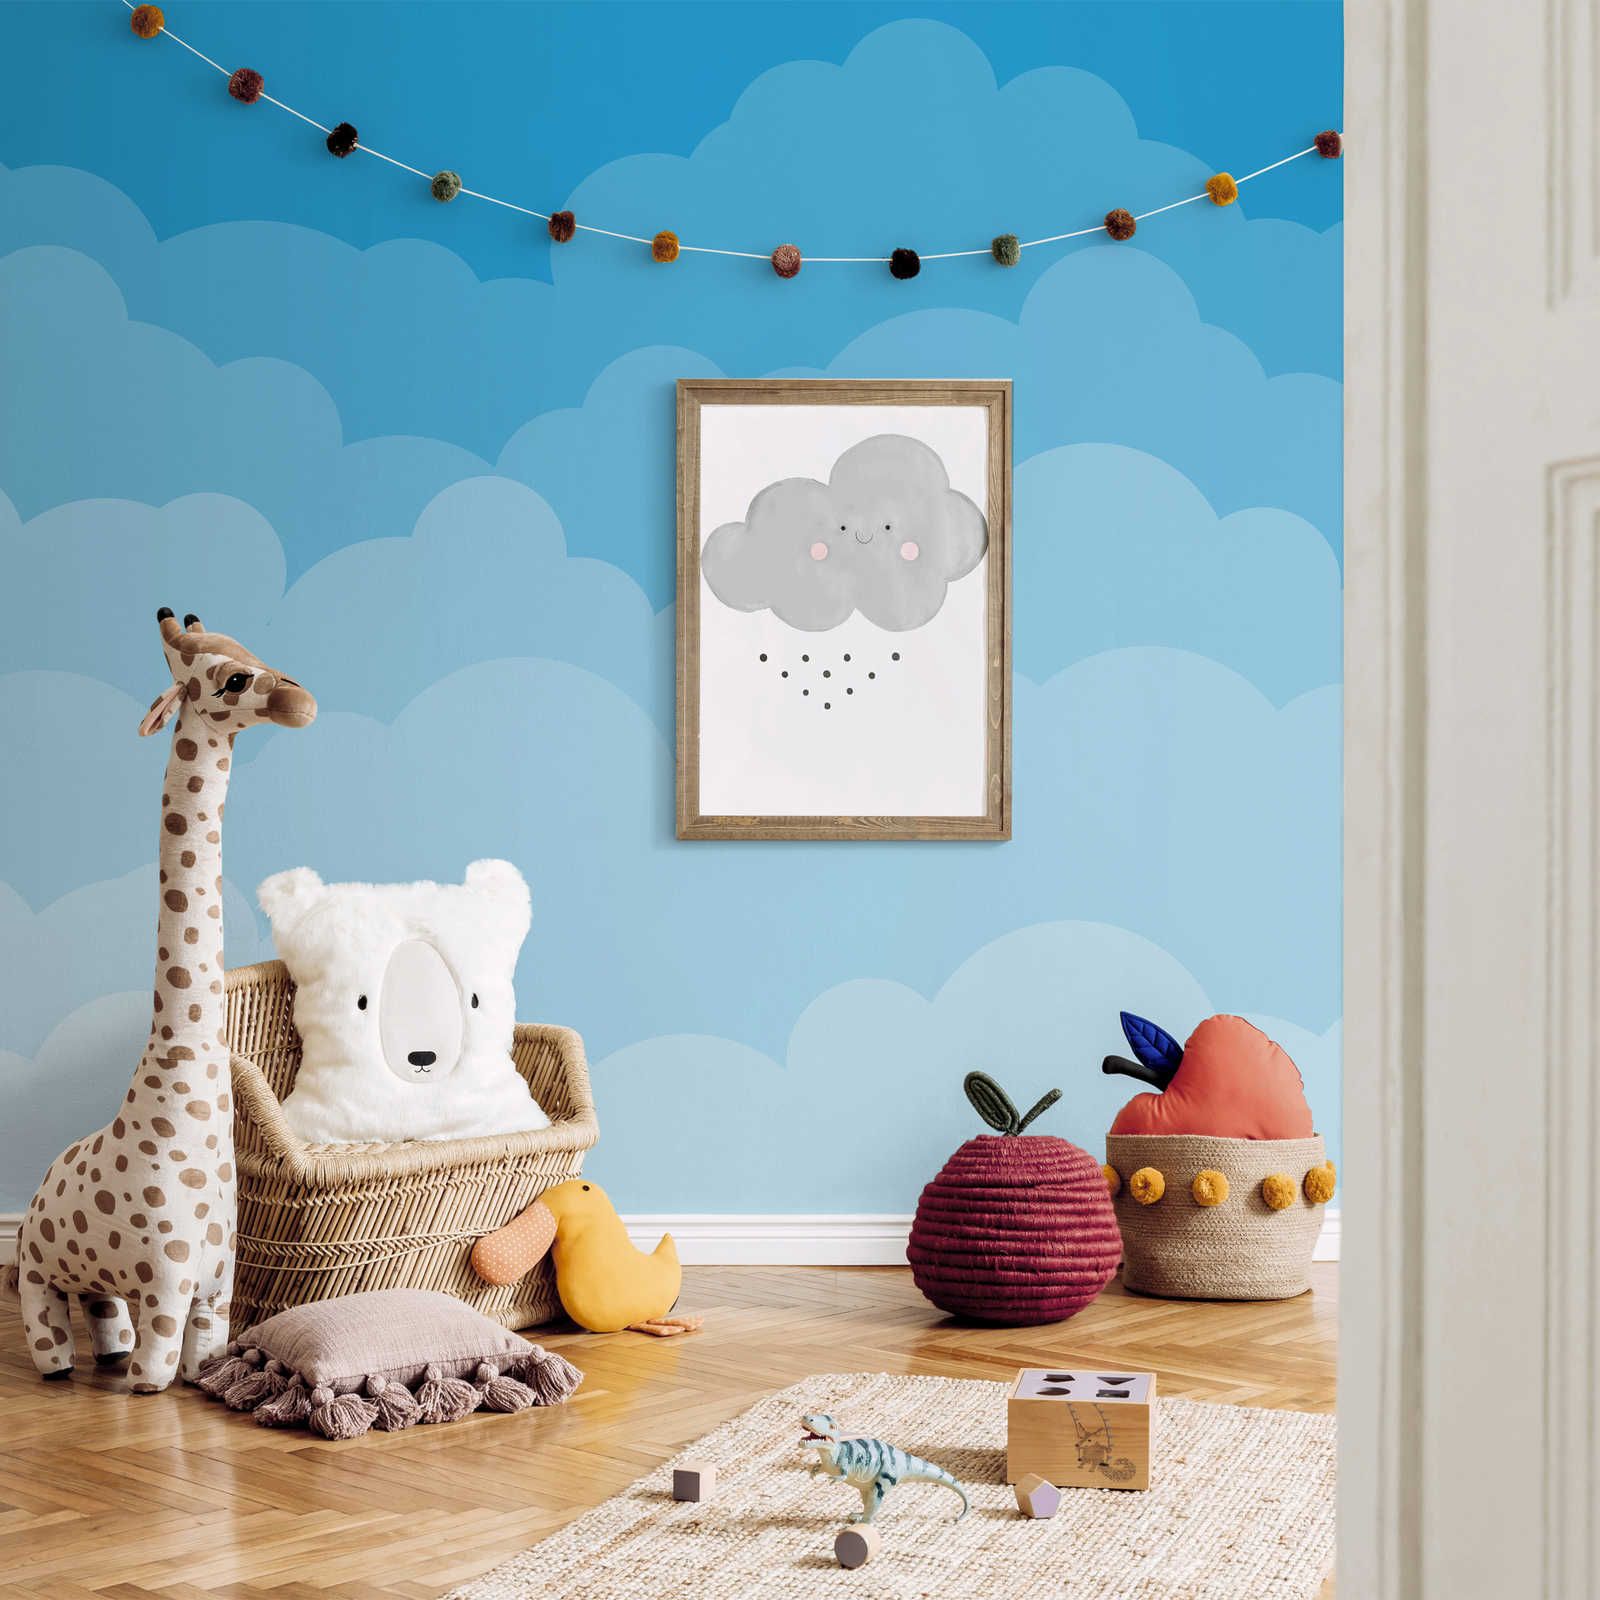 Fototapete Himmel mit Wolken im Comic-Stil – Glattes & perlmutt-schimmerndes Vlies
